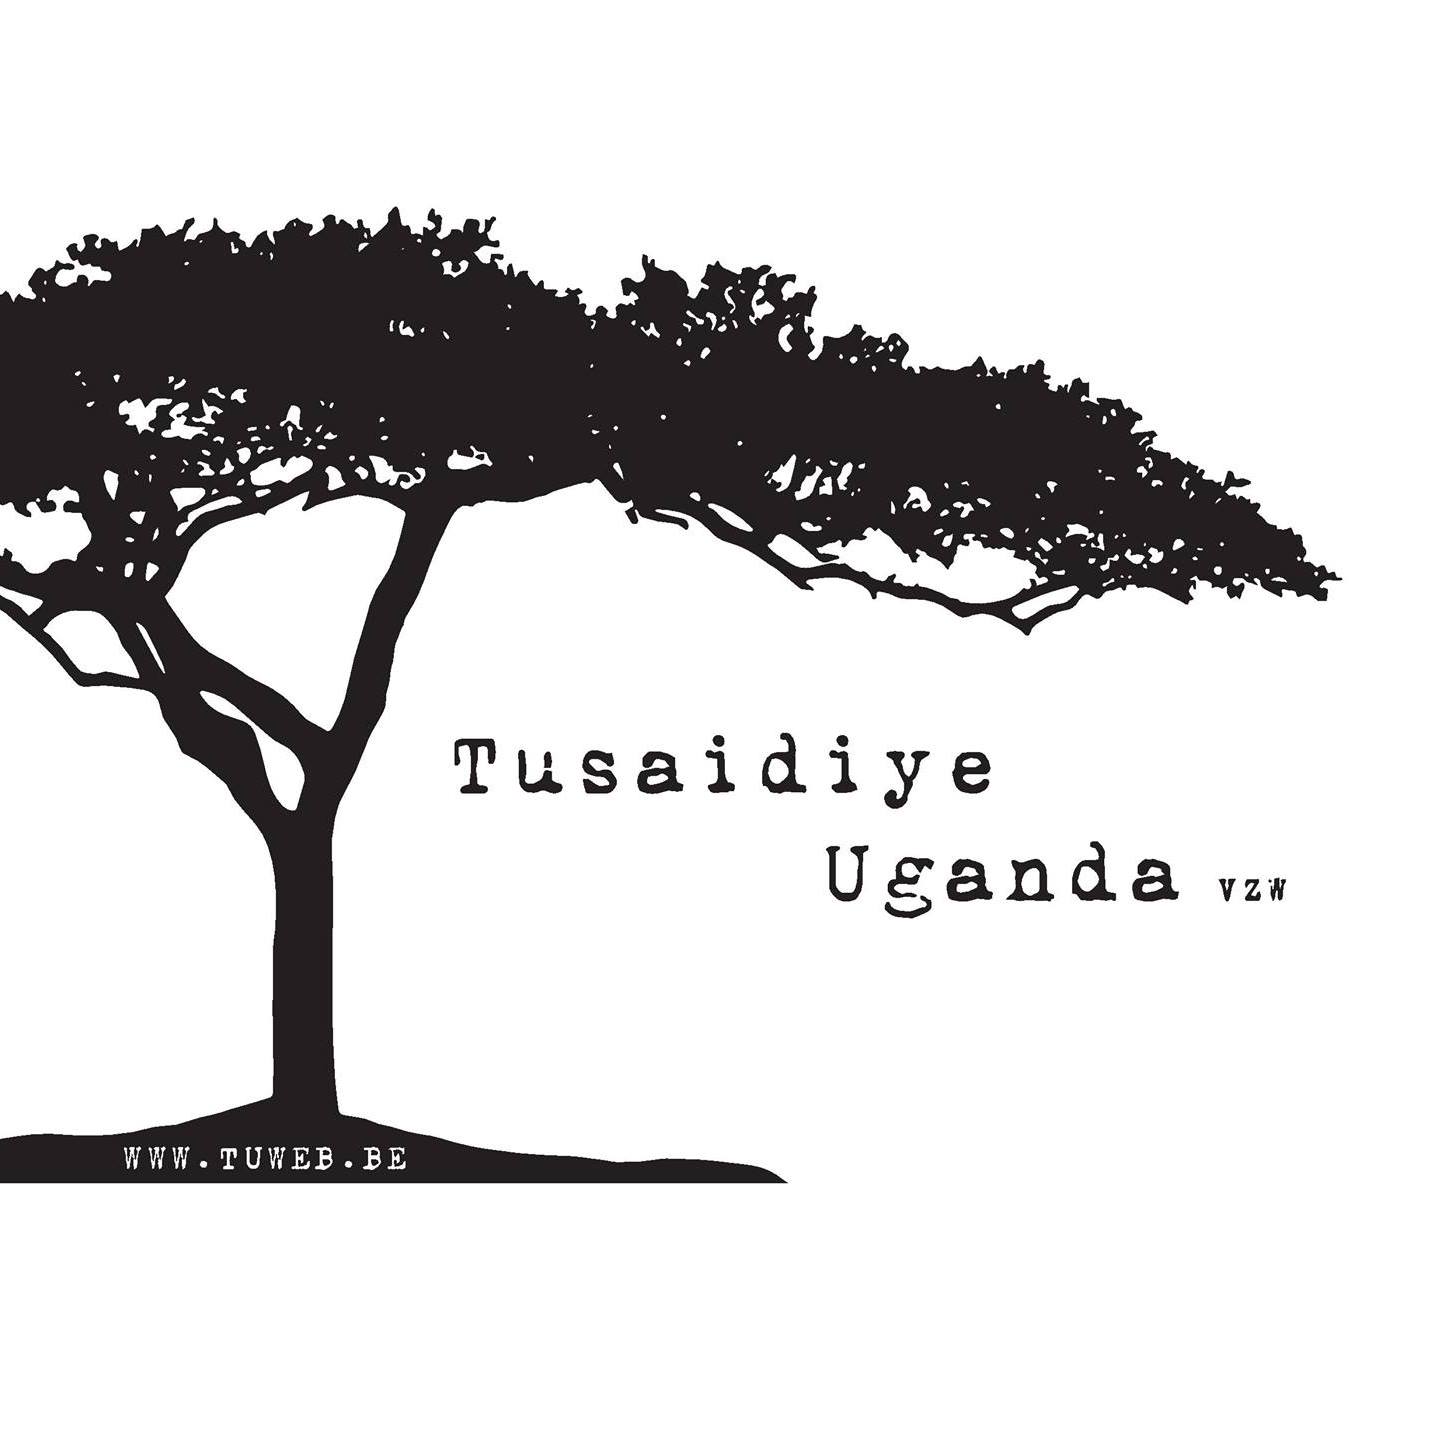 VZW Tusaidiye Uganda logo